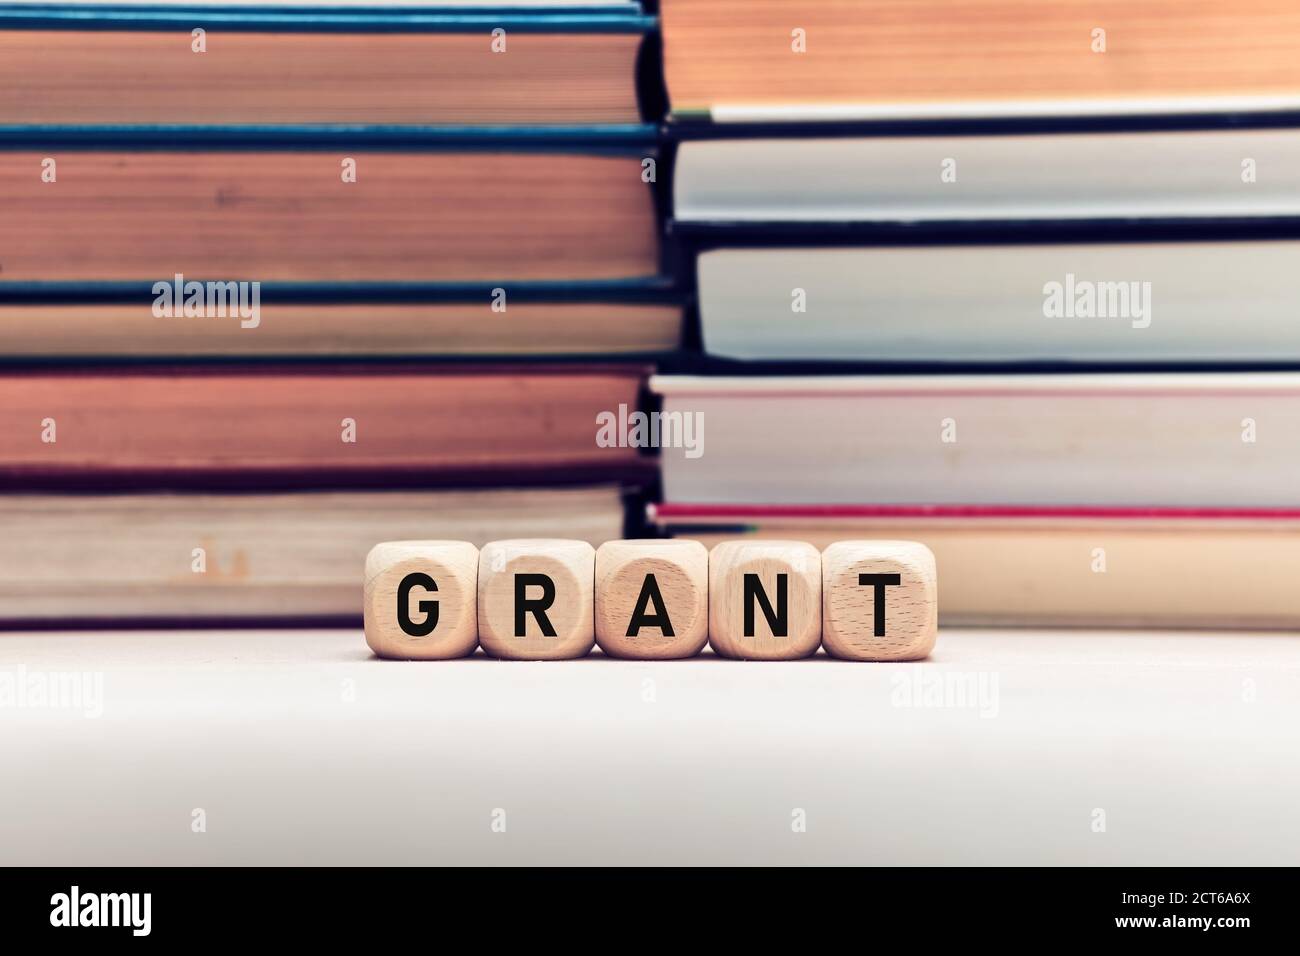 Le mot Grant sur des cubes en bois sur fond de livres empilés. Concept de financement de l'éducation ou de la recherche. Banque D'Images